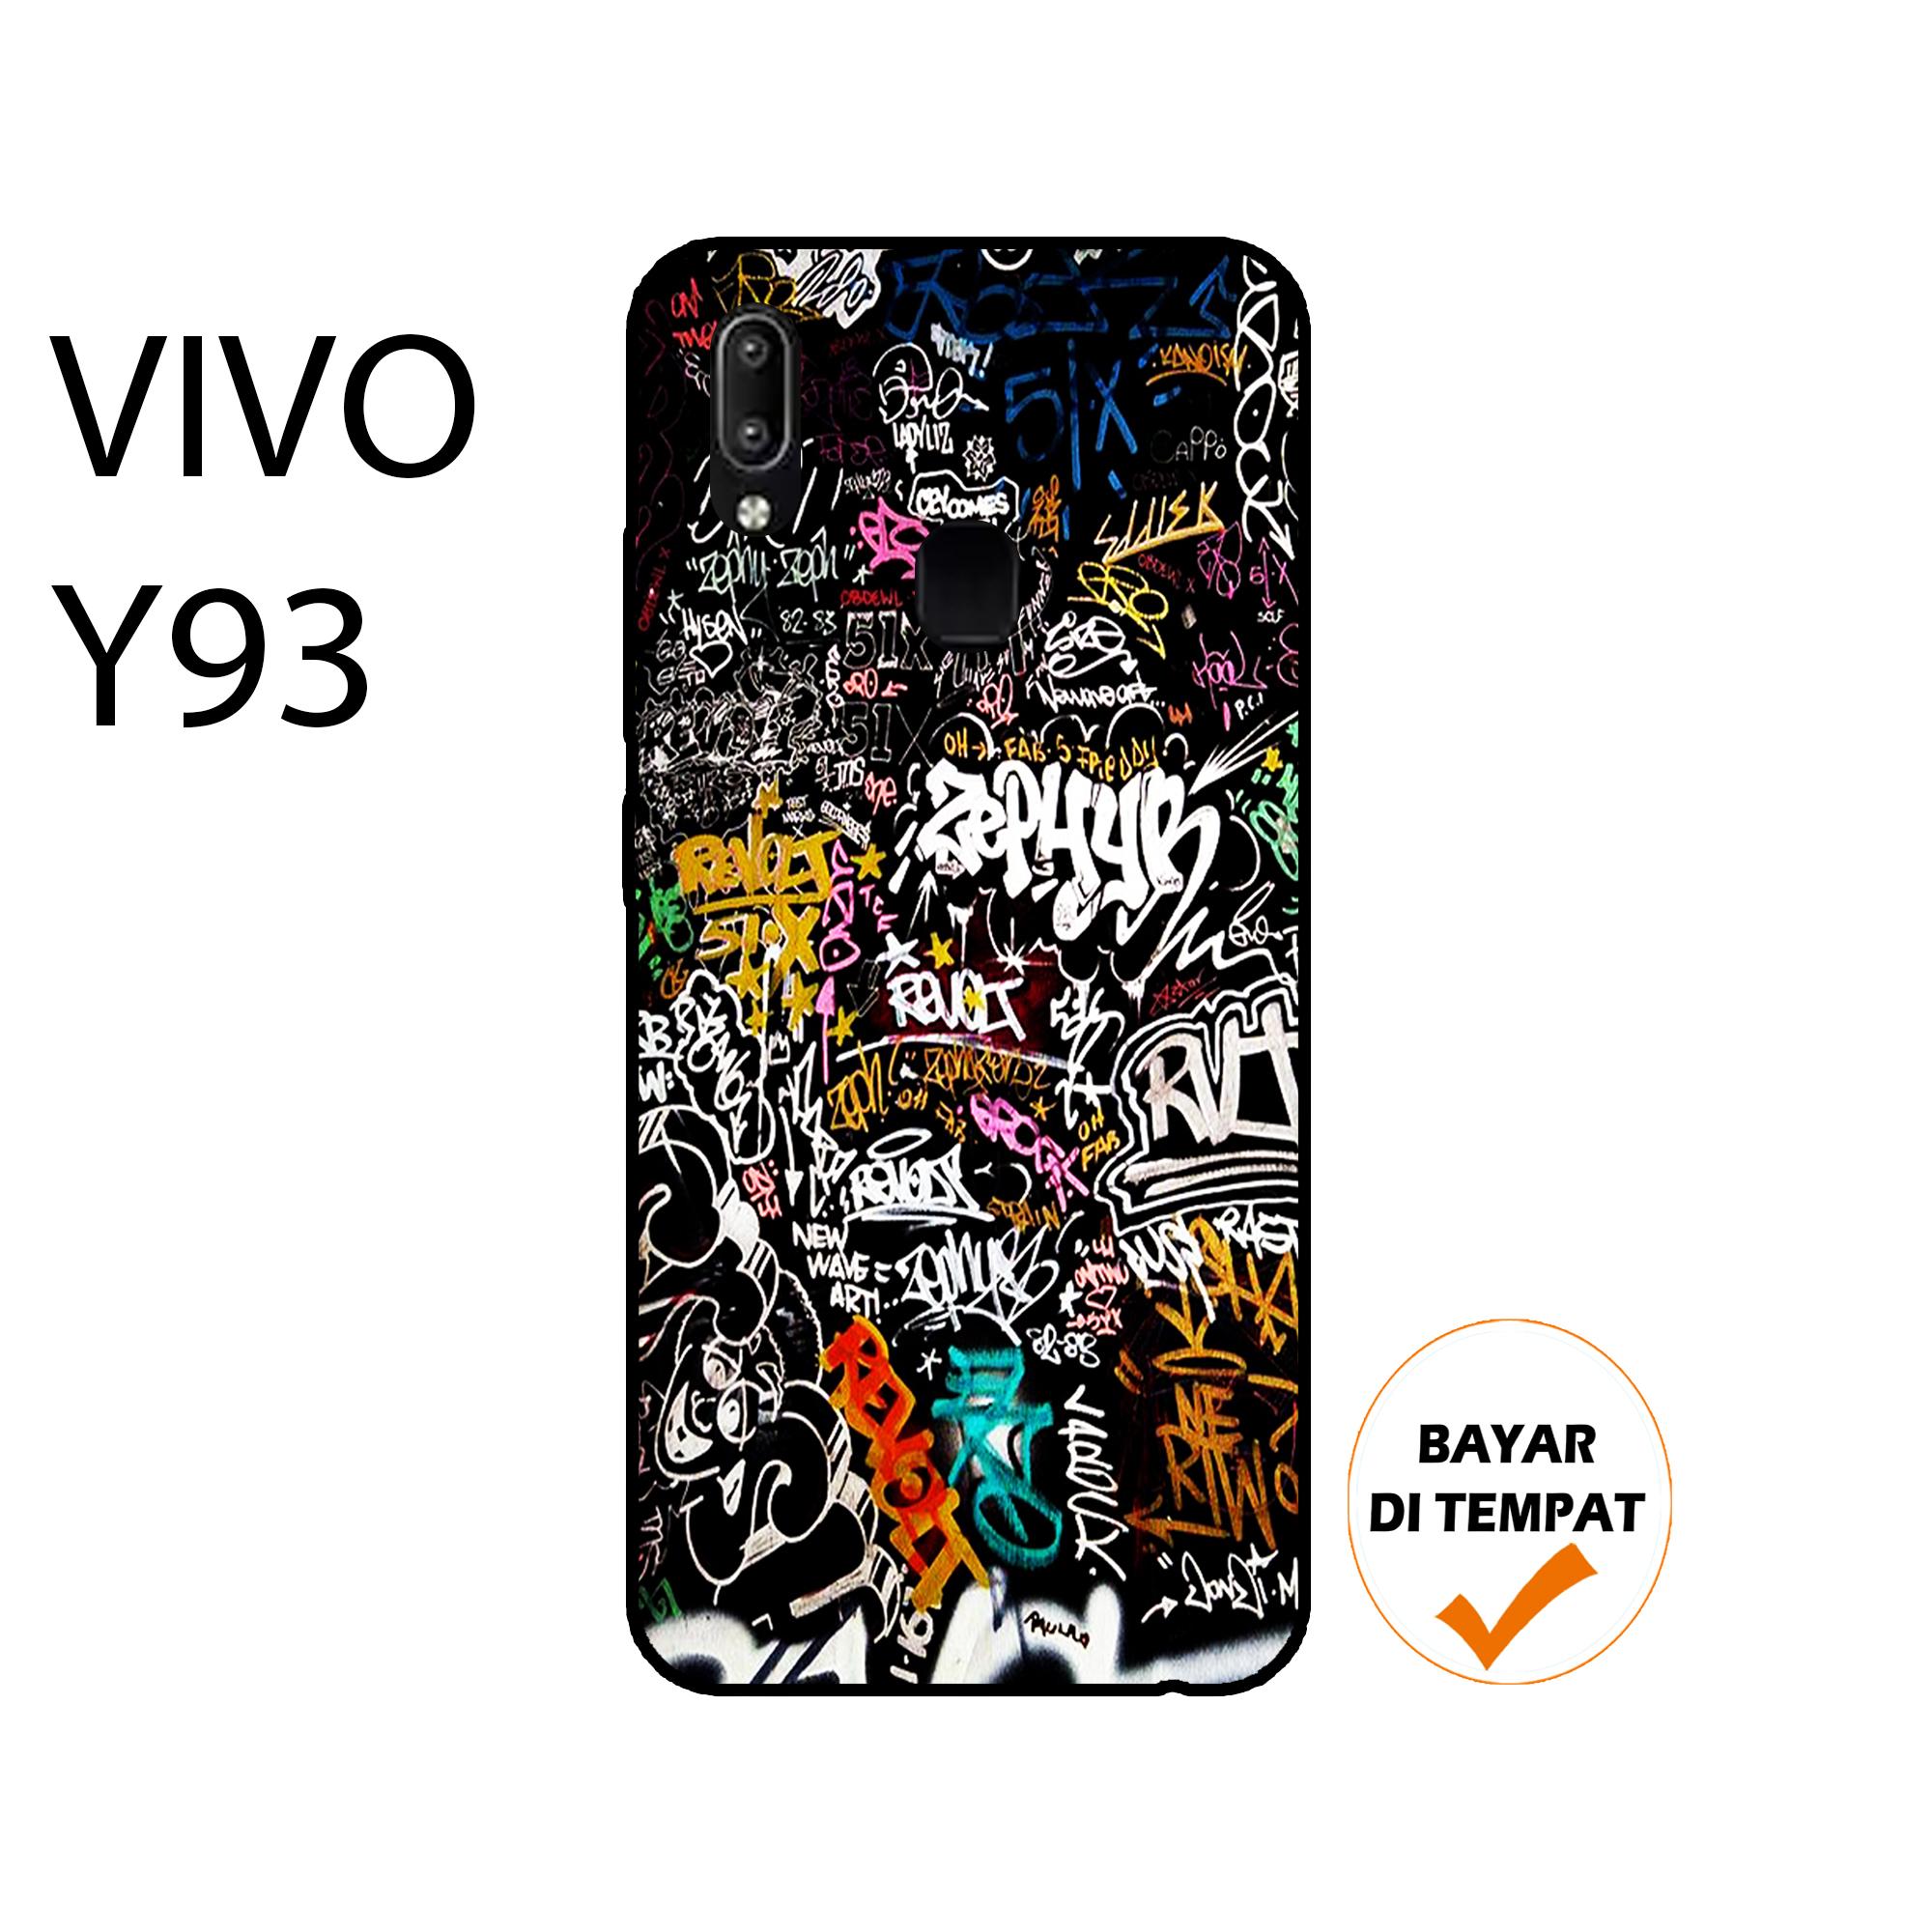 Marintri Case Vivo Y93 Mixing Series Cbi Casing Y93 Kondom Vivo Y93
Casing And Cover Casing Hp Case Murah Custom Case002